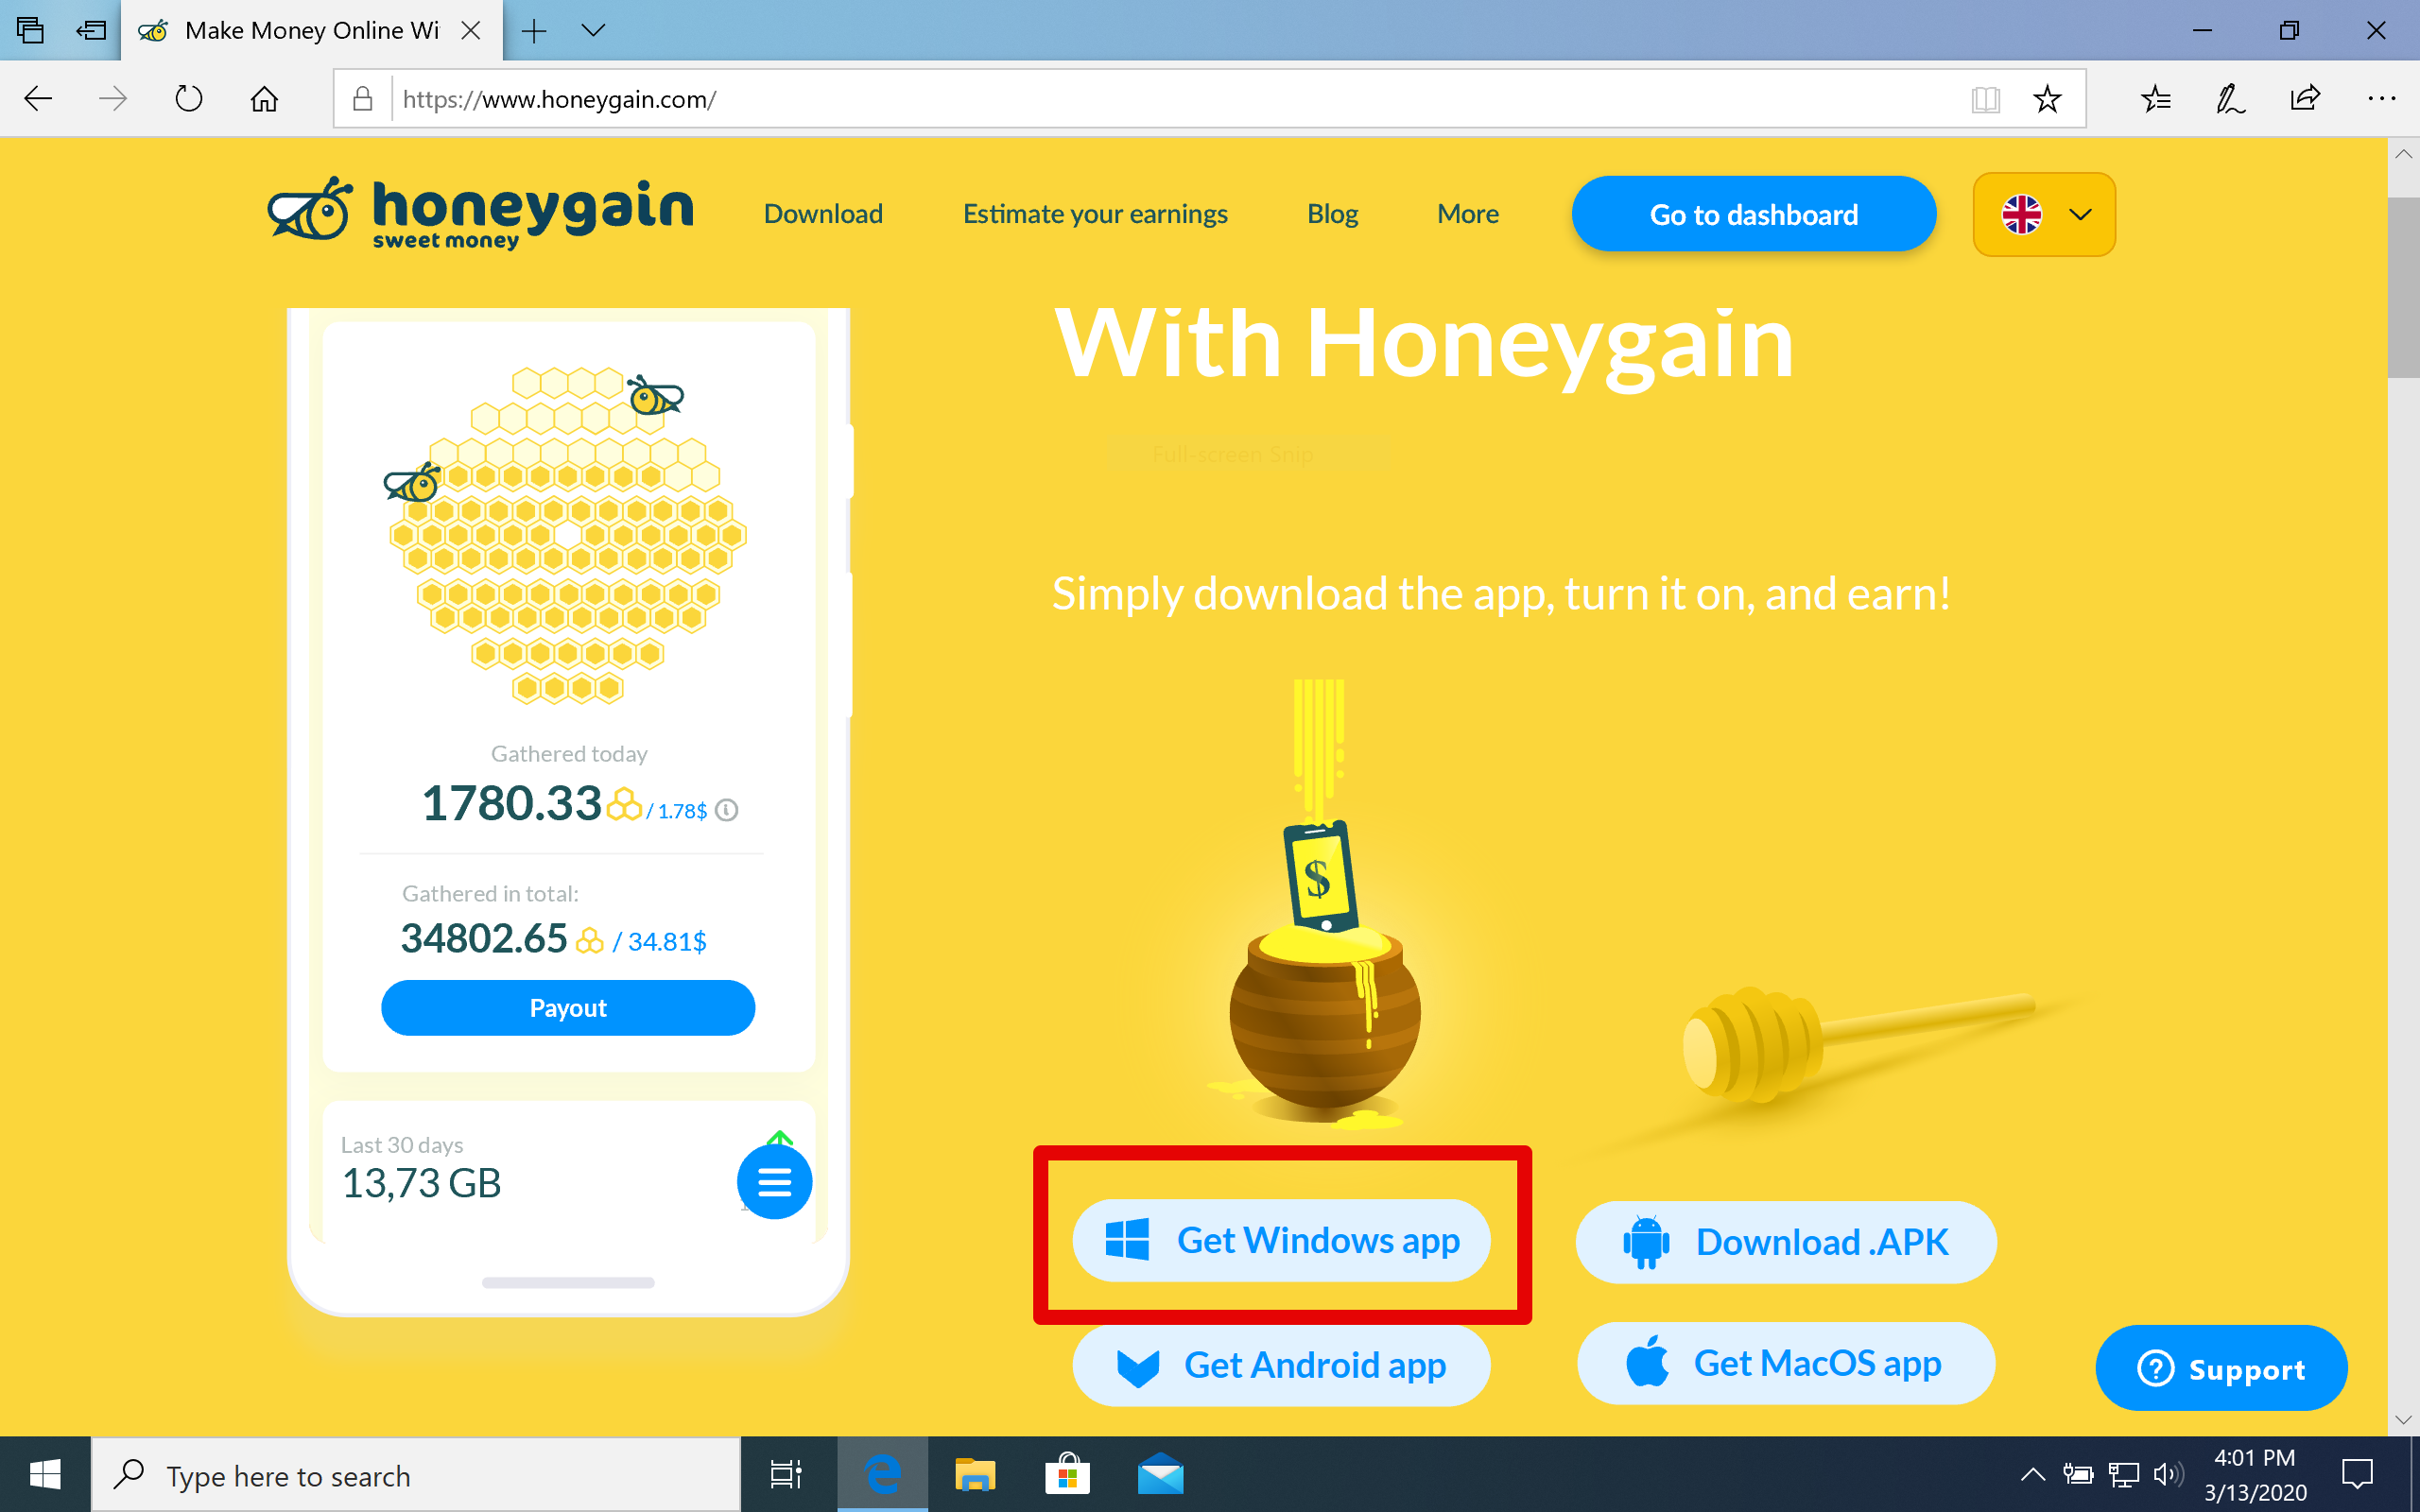 honeygain.com